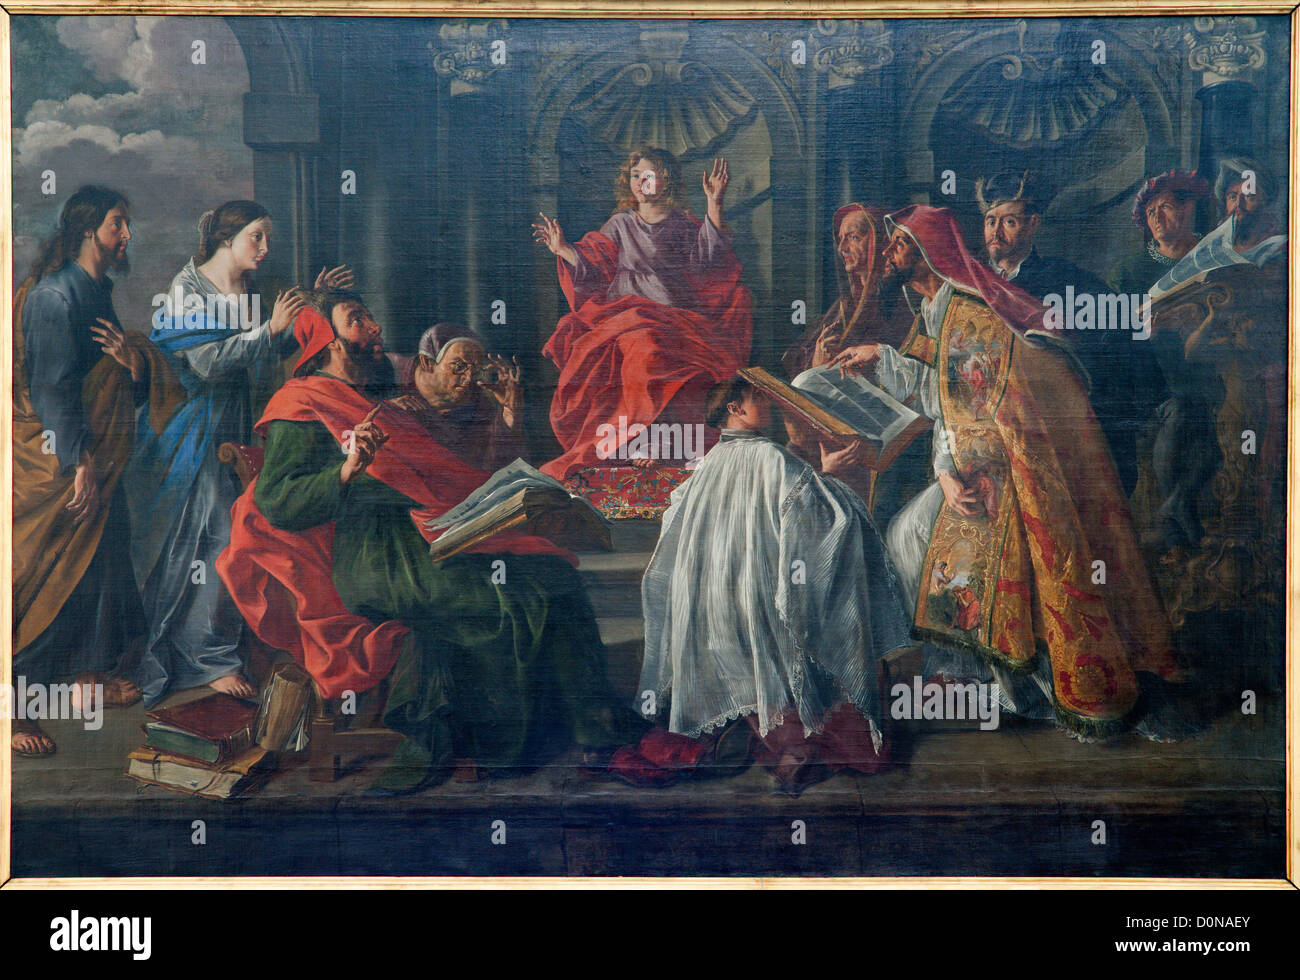 Brüssel - Juni 21: Farbe der Szene als Jesus Christus im Alter von 12 Jahren Unterricht im Tempel Stockfoto